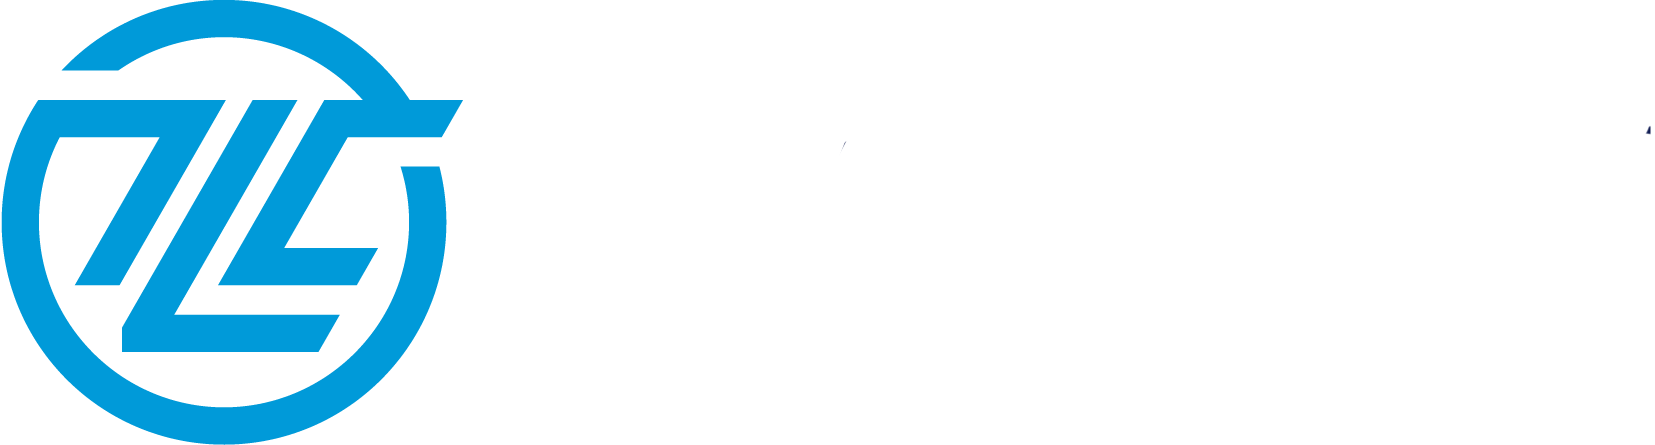 Translog Company | Přepravní řešení, která vyhovují vašim potřebám